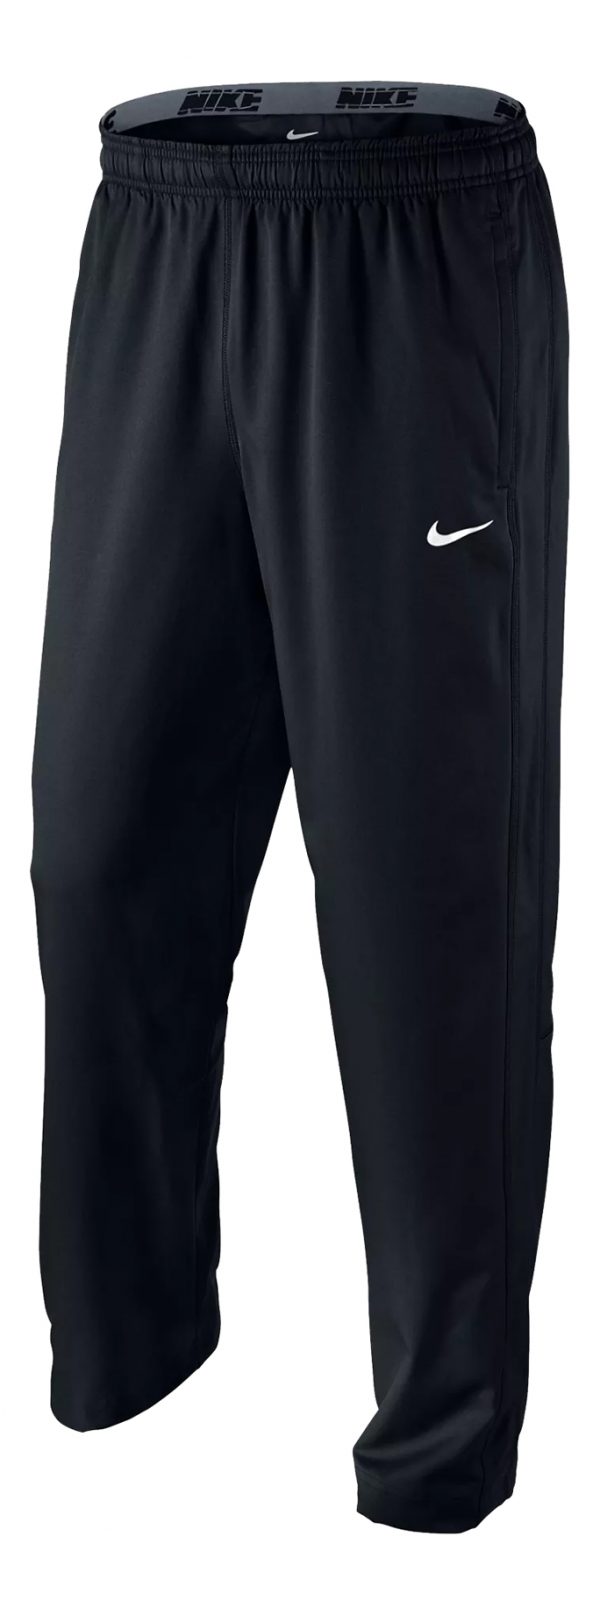 Spodnie wyjściowe Nike Team Woven 377786-010 Rozmiar M (178cm)